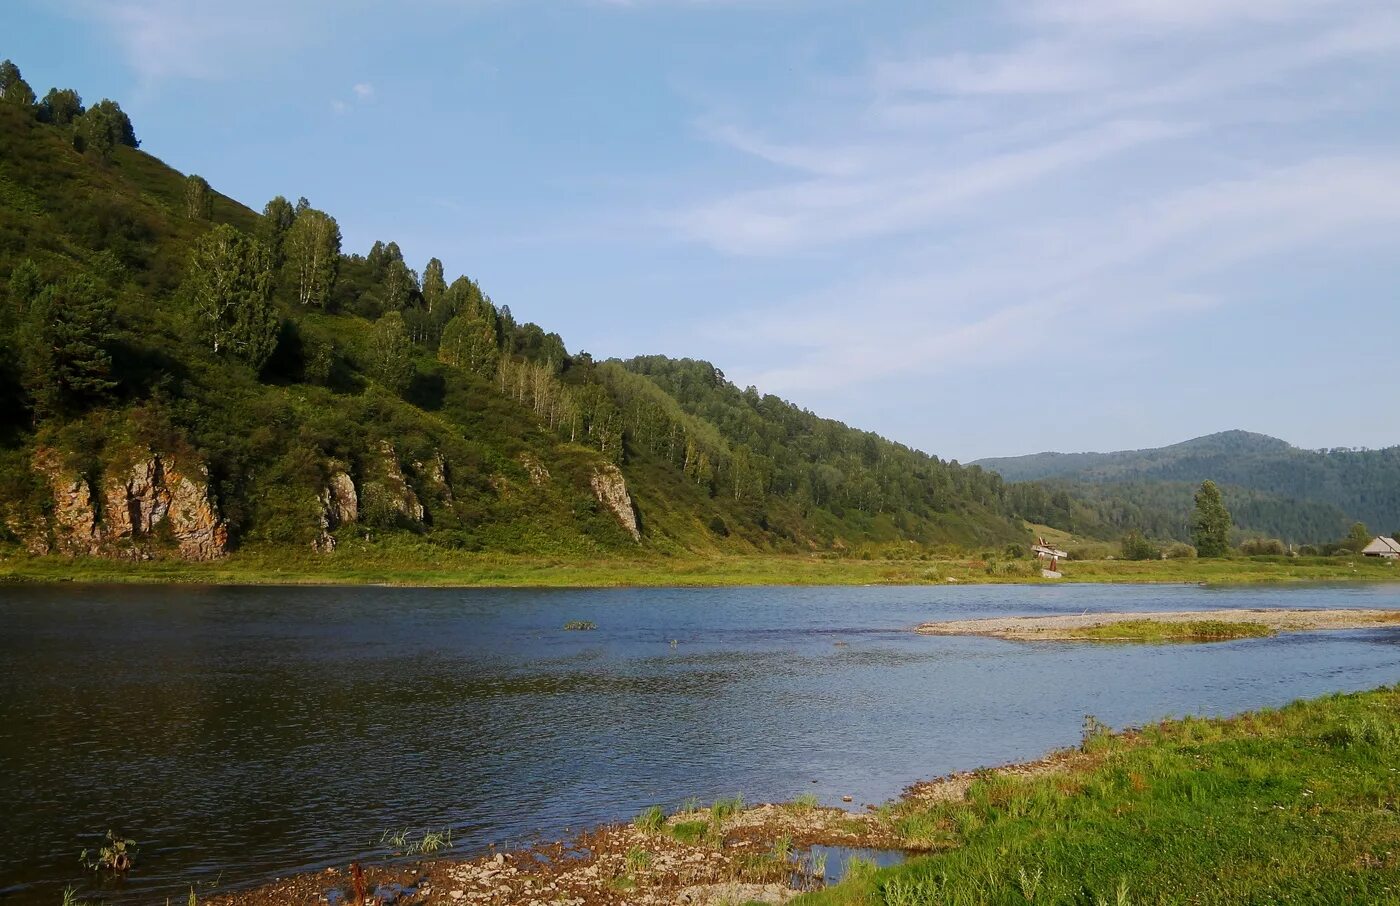 Мрассу. Река Мрассу Горная Шория. Мрас-Су река. Река Мрас-Су в Кемеровской области. Заповедник Кемеровская область Мрассу.